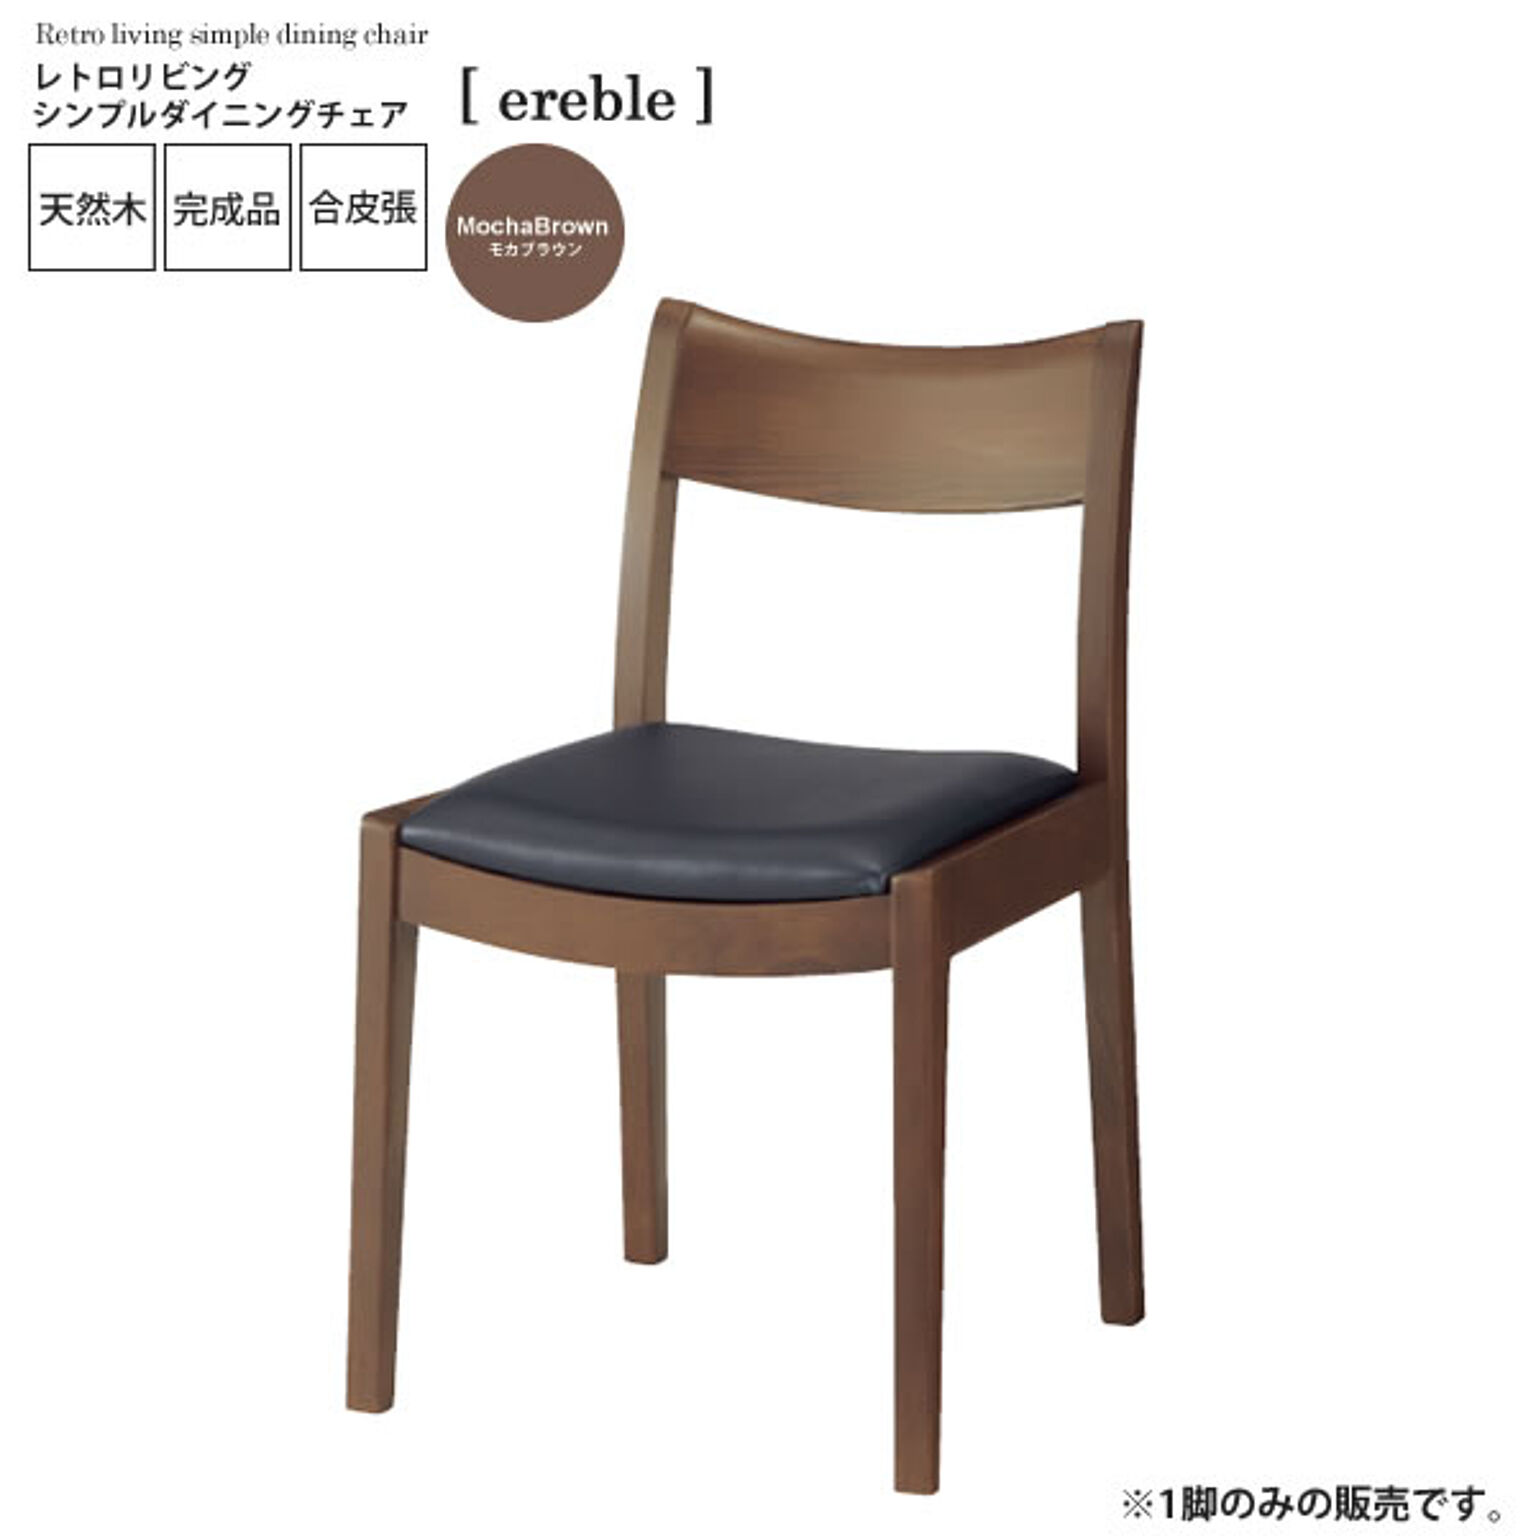 モカブラウン ： レトロリビング シンプルダイニングチェア【ereble】 ブラウン(brown) (ナチュラル) イス 椅子 リビングチェア ワーク デスクチェア 